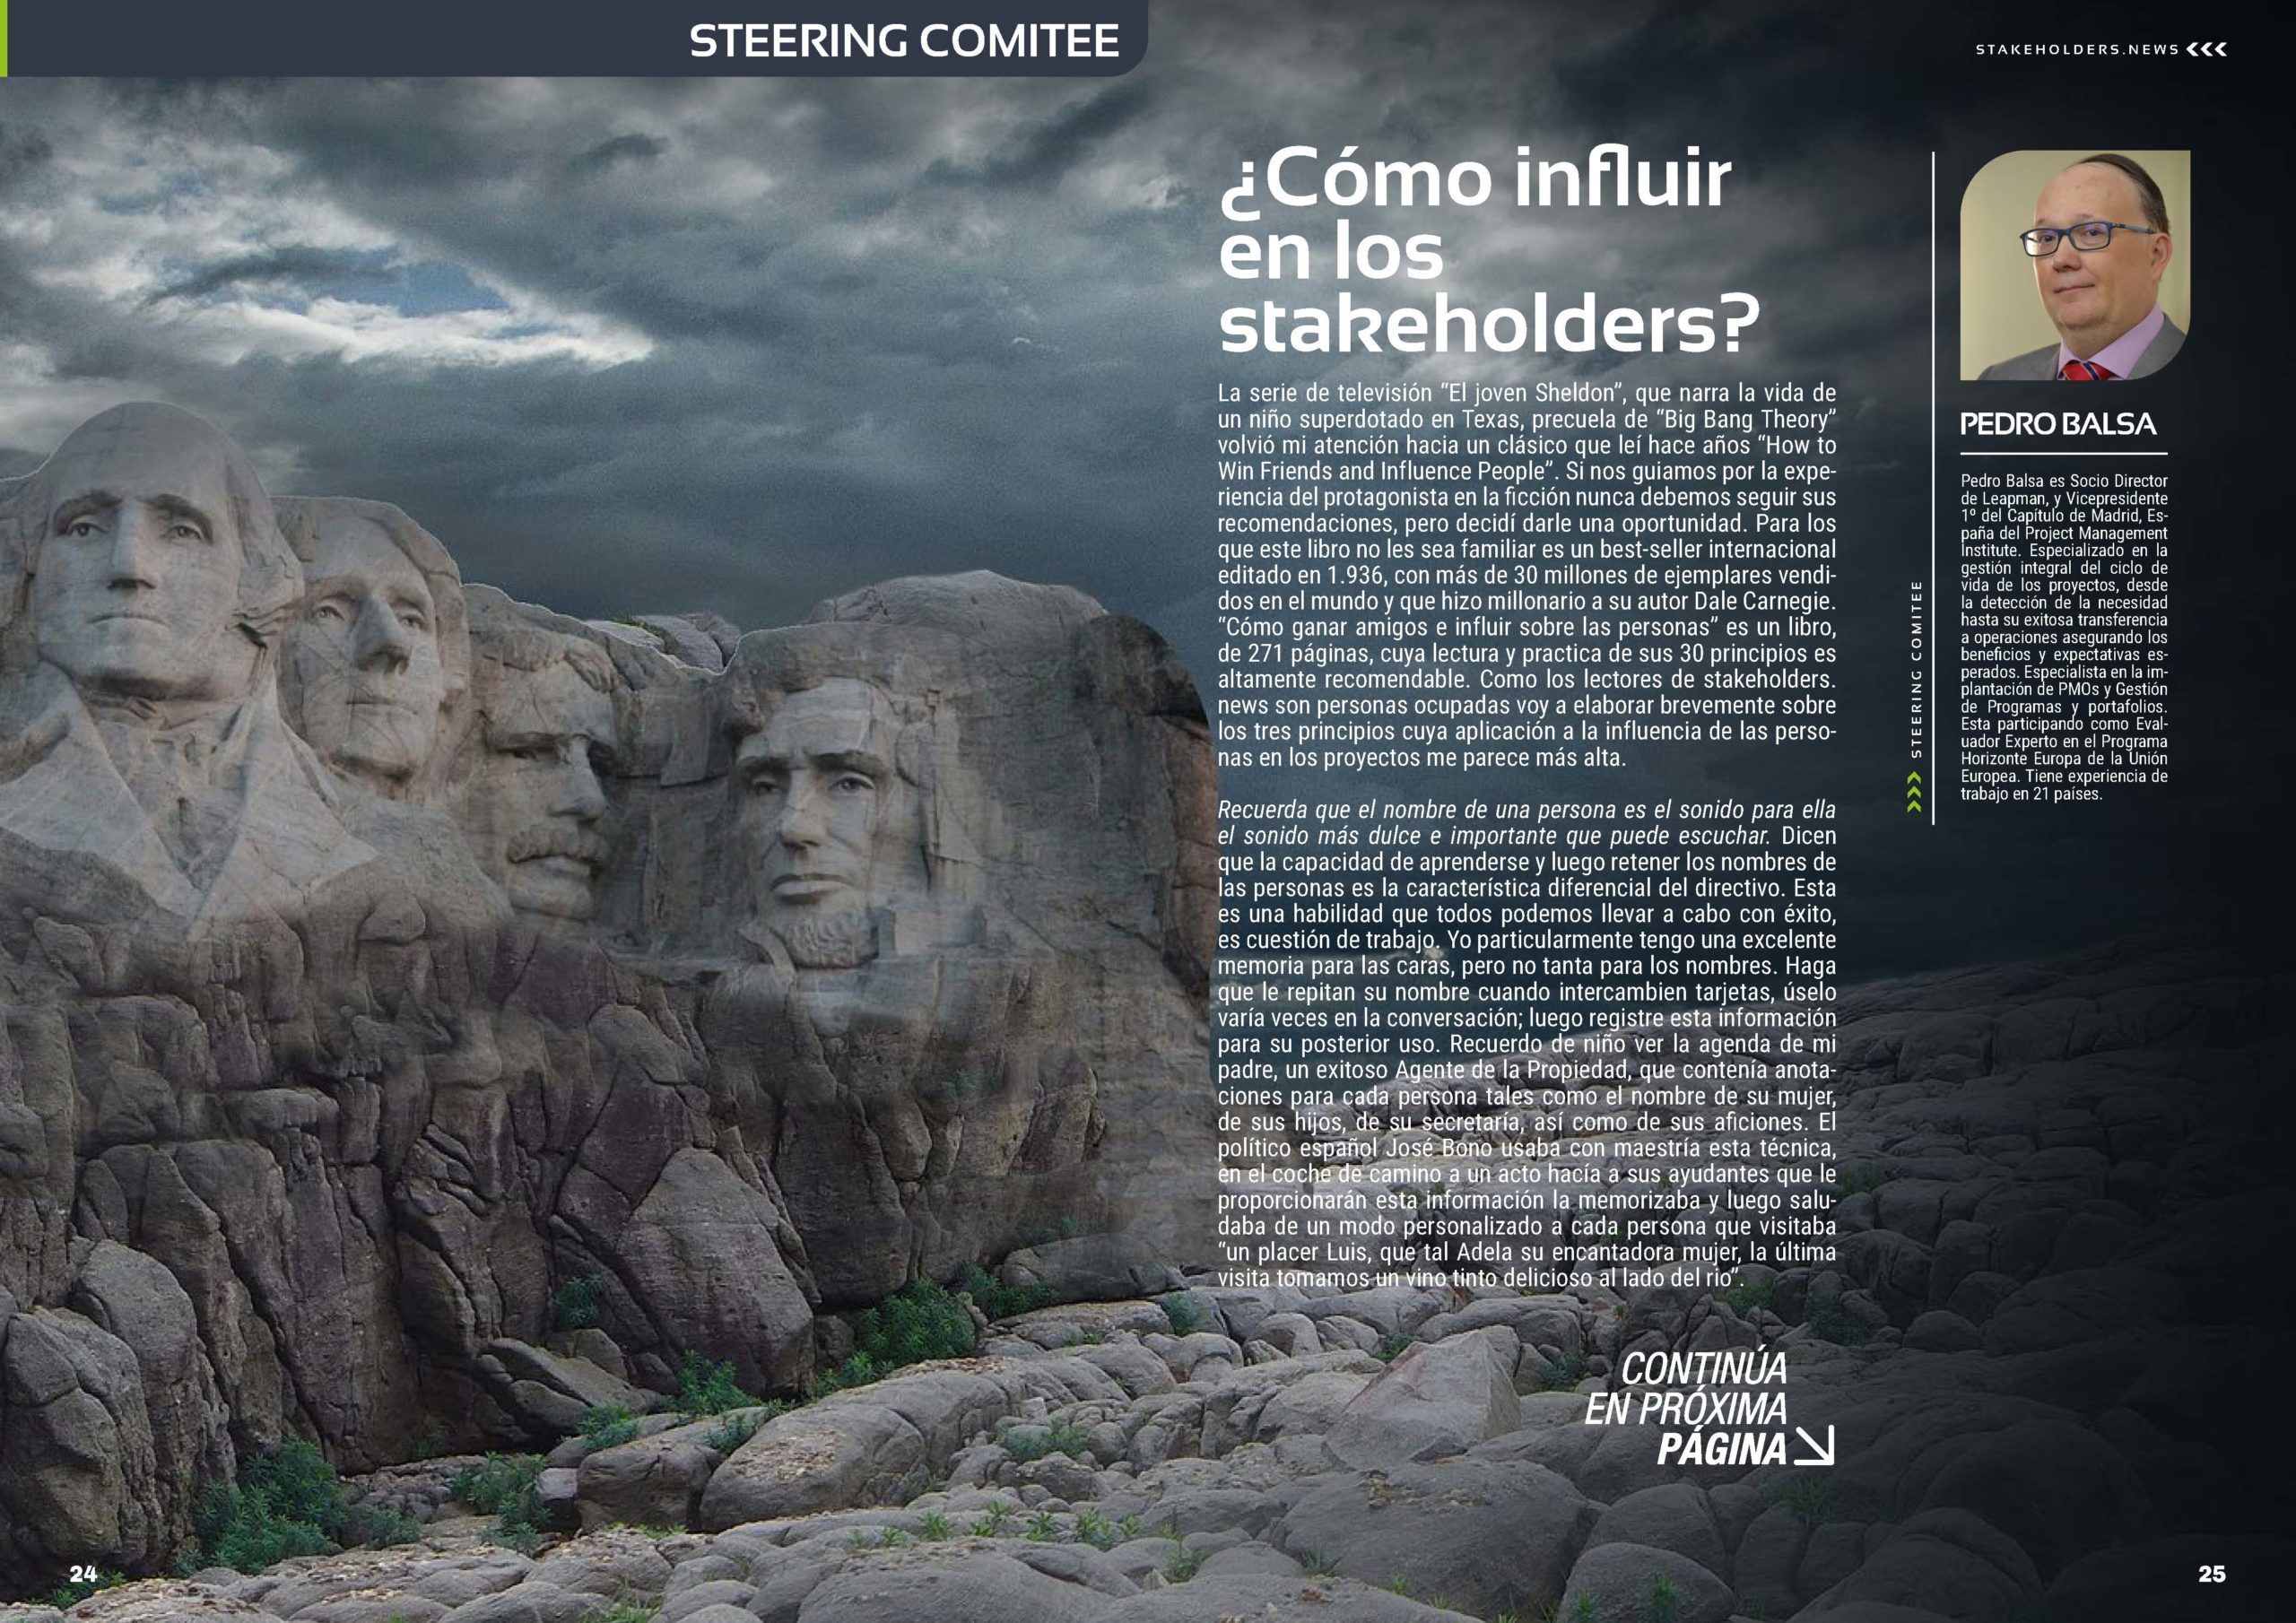 "¿Cómo influir en los Stakeholders?" Articulo de Pedro Balsa en la Sección Steering Comitee de la Revista Stakeholders.news